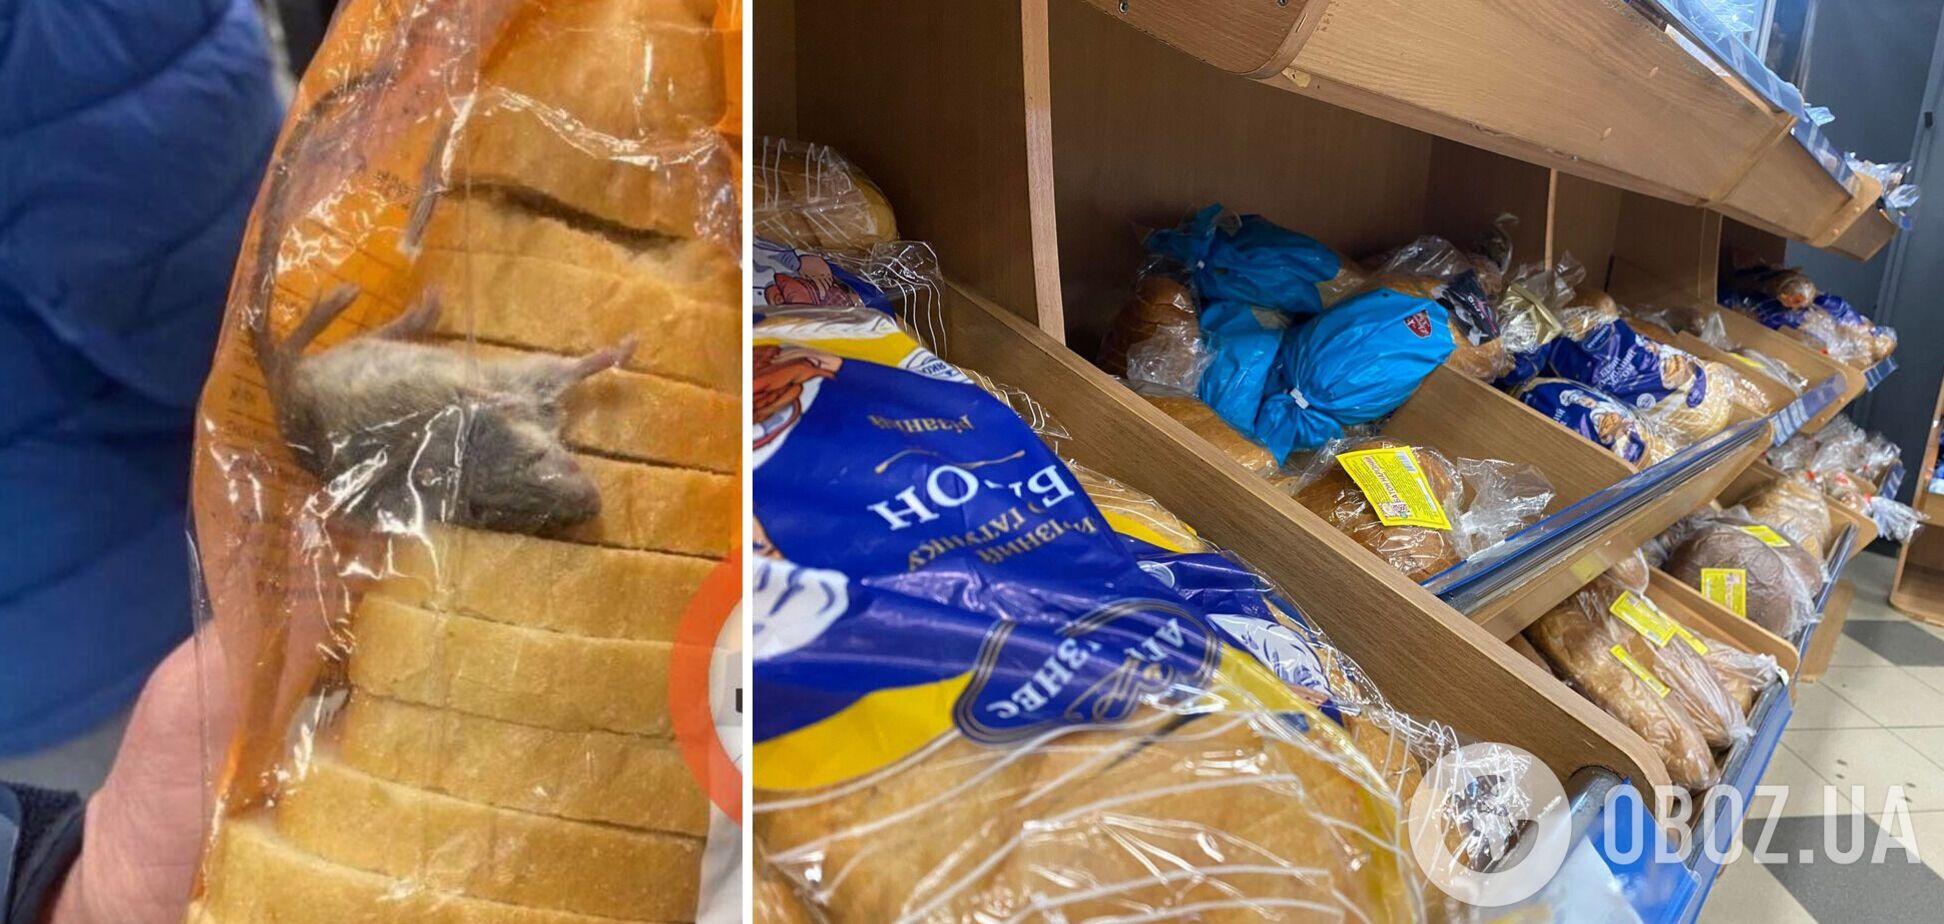 Покупатель обнаружил мертвую мышь в упаковке с хлебом